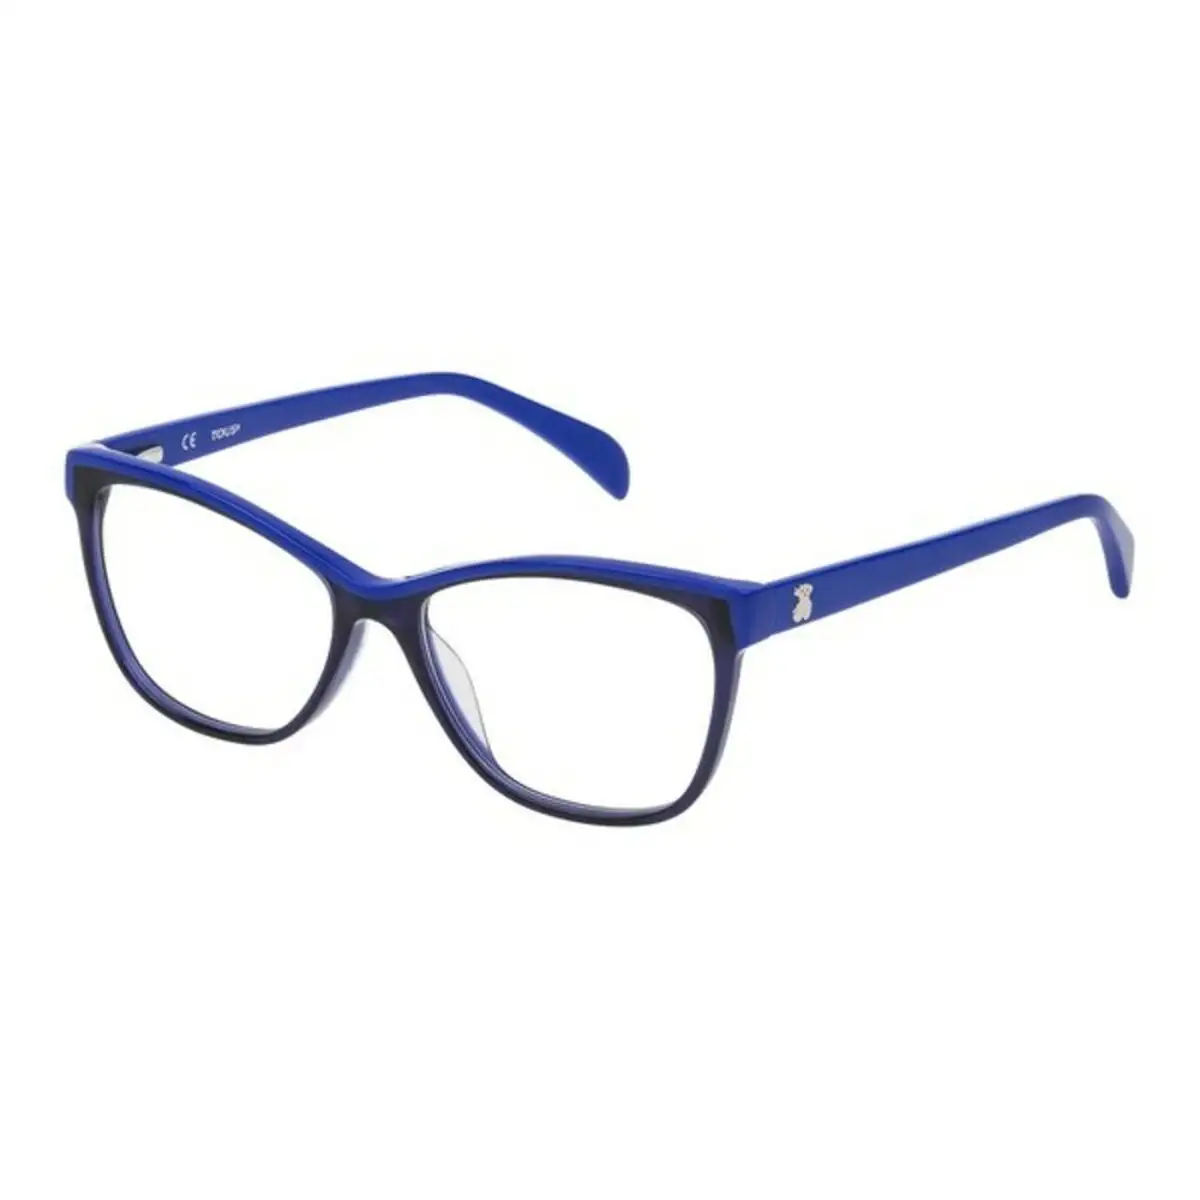 Monture de lunettes femme tous vto938520892 52 mm bleu o 52 mm _9592. Bienvenue chez DIAYTAR SENEGAL - Où le Shopping Devient un Plaisir. Découvrez notre boutique en ligne et trouvez des trésors qui égaieront chaque jour de votre vie.